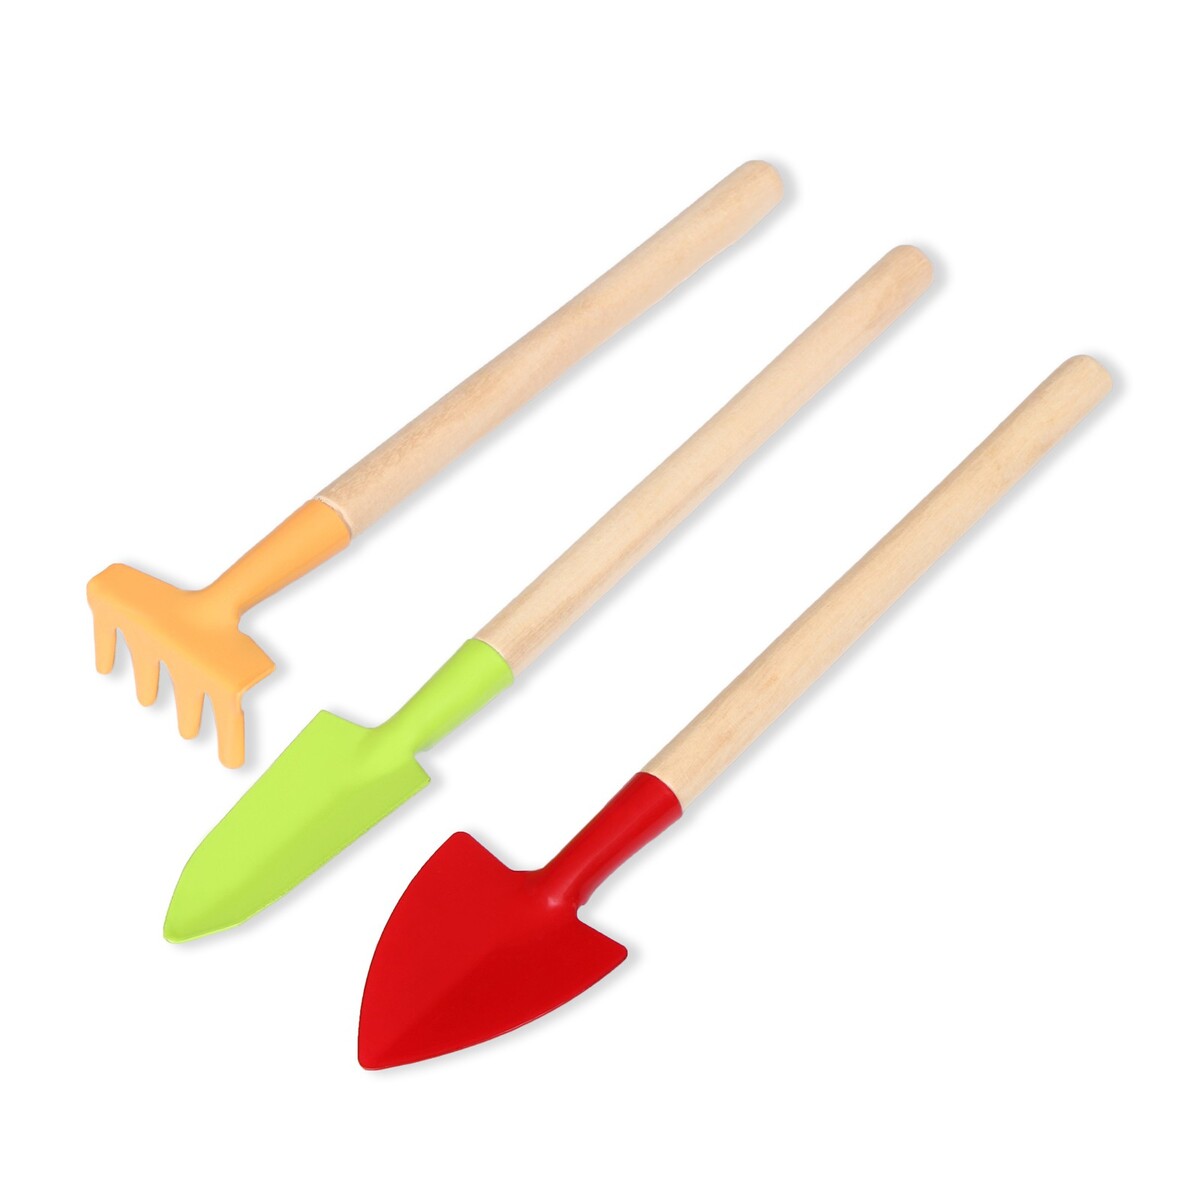 Набор садового инструмента, 3 предмета: рыхлитель, совок, грабли, длина 20 см, greengo набор для песочницы совок и грабли с отверстием а микс 5 набор